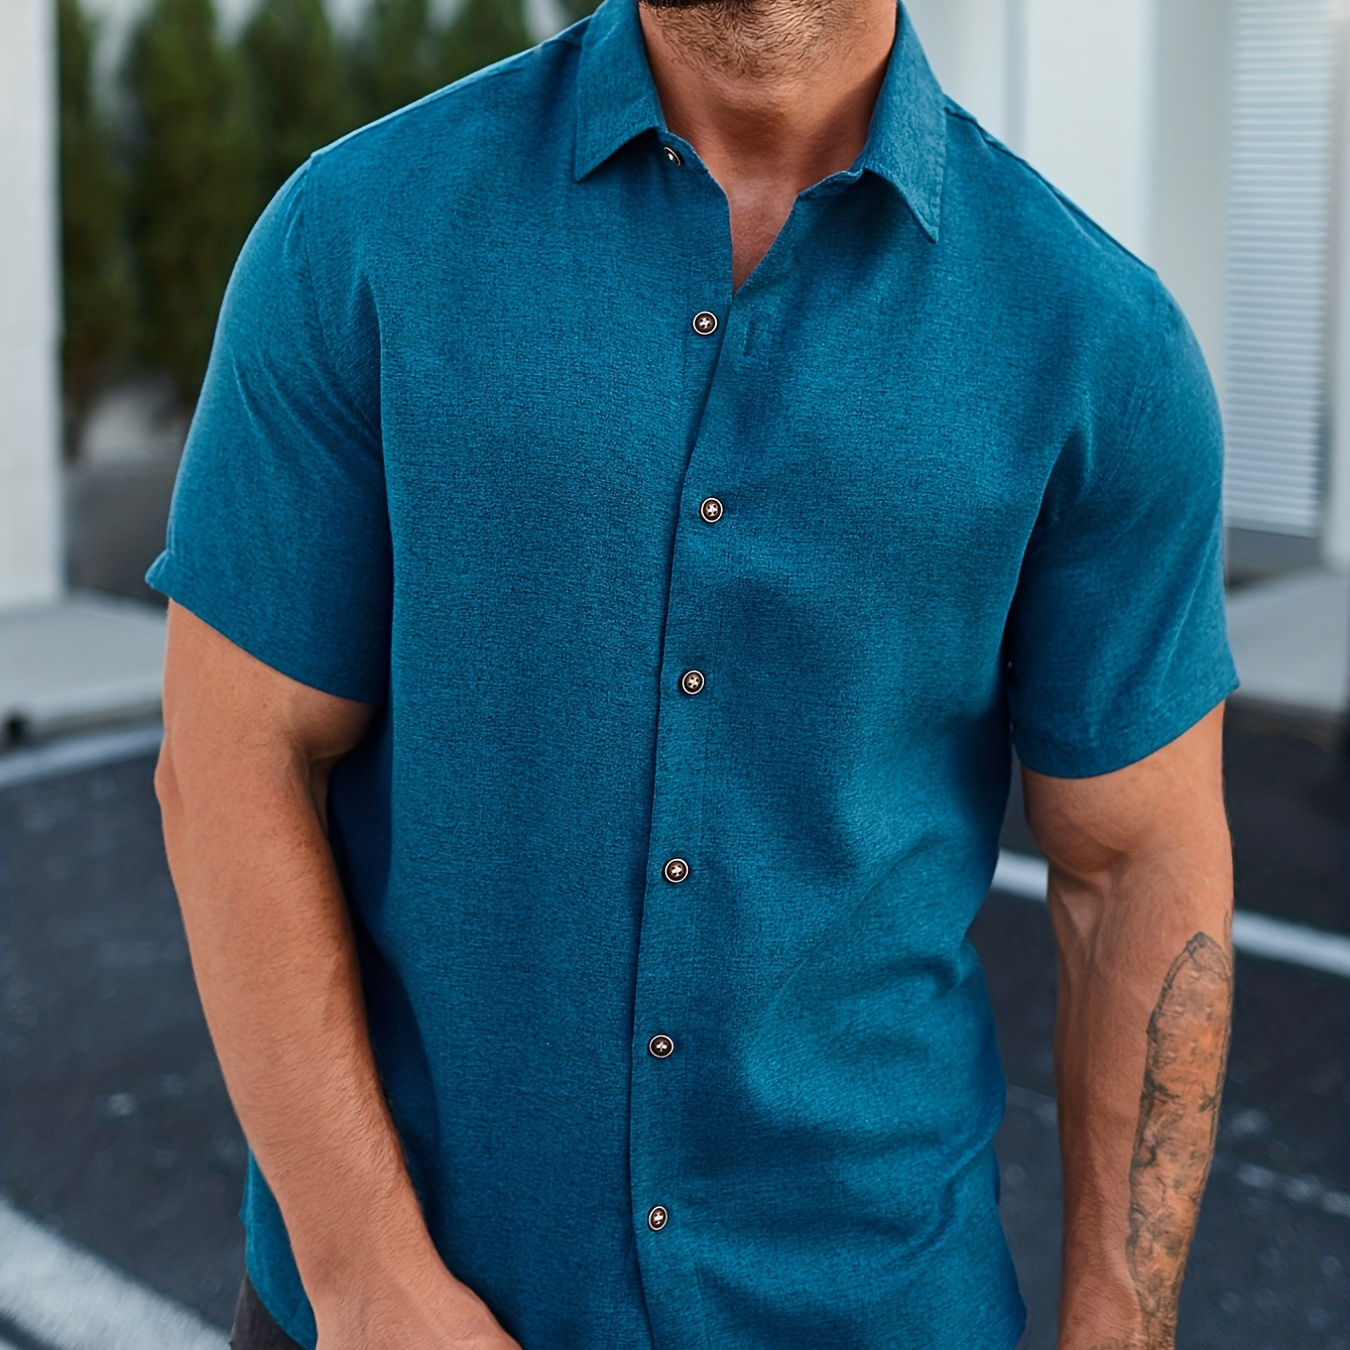 

Men's Casual Short Sleeve Shirt, Men's Shirt For Summer Vacation Resort, Tops For Men, Gift For Men